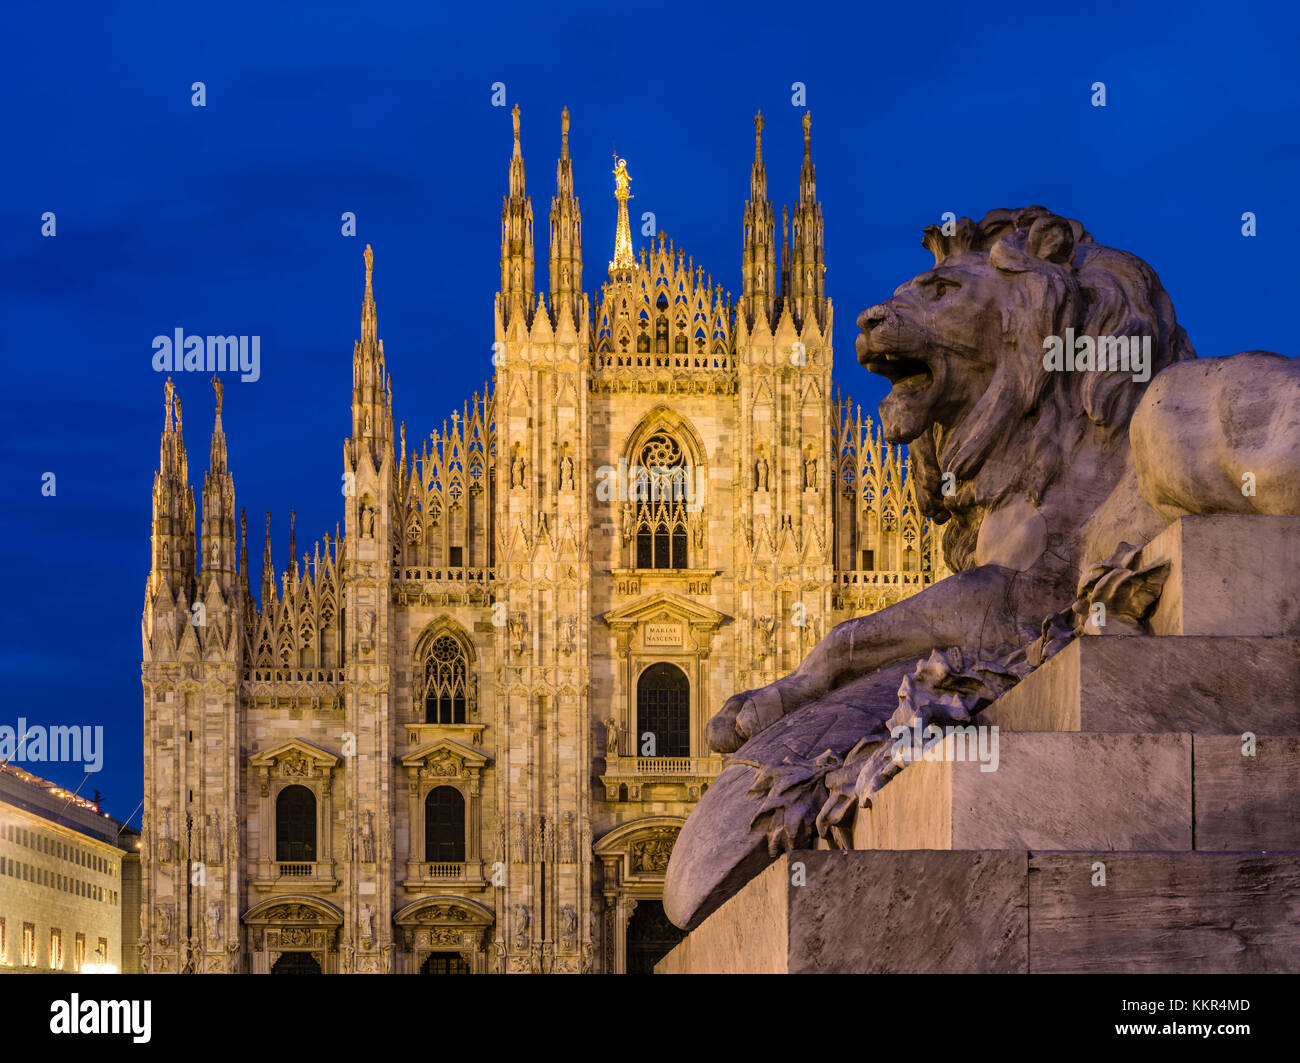 Lion statue in cathedral in -Fotos und -Bildmaterial in hoher Auflösung –  Alamy